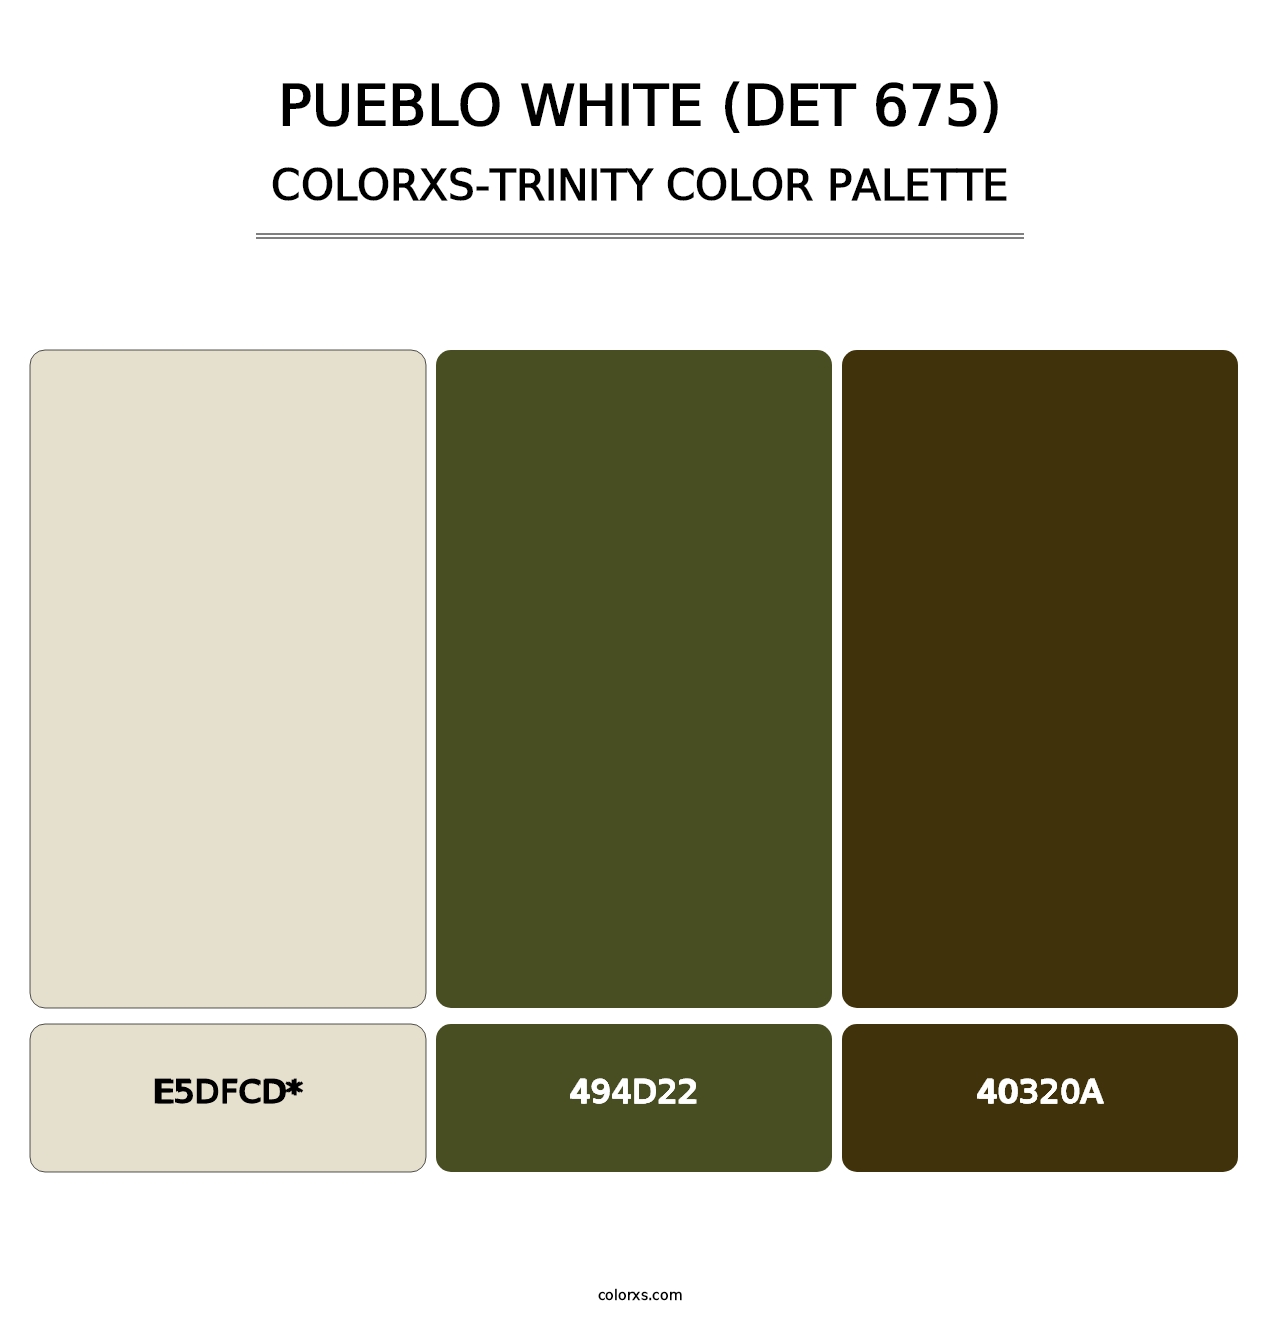 Pueblo White (DET 675) - Colorxs Trinity Palette